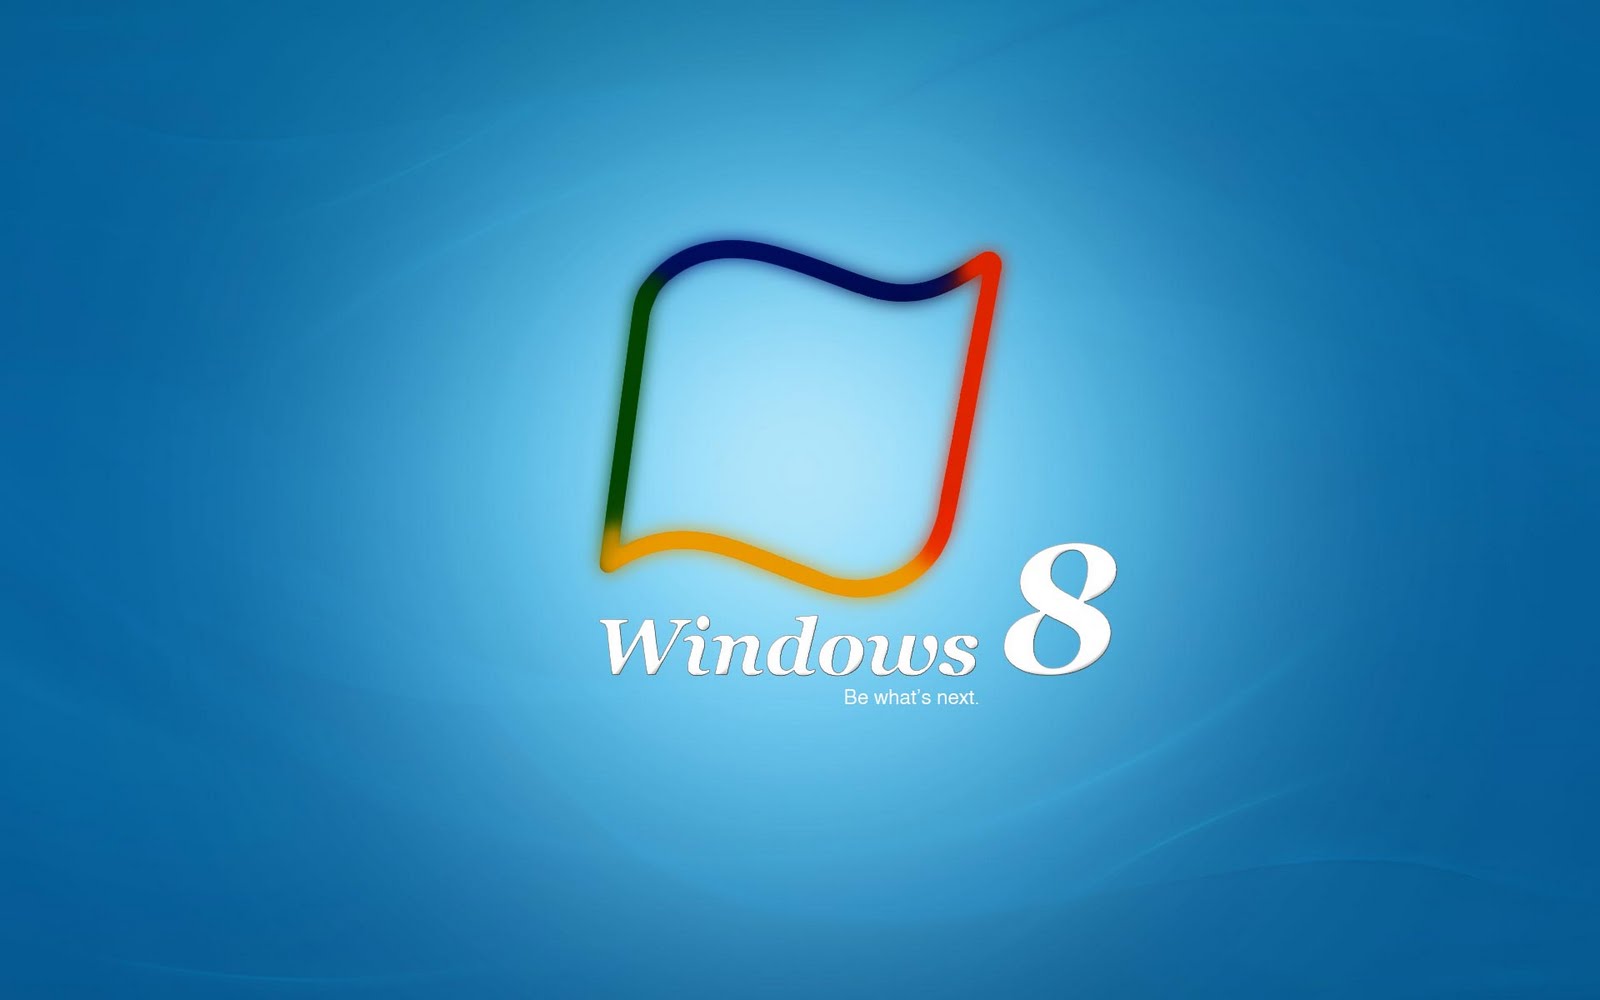 Wallpaper Hd Widescreen Windows 8